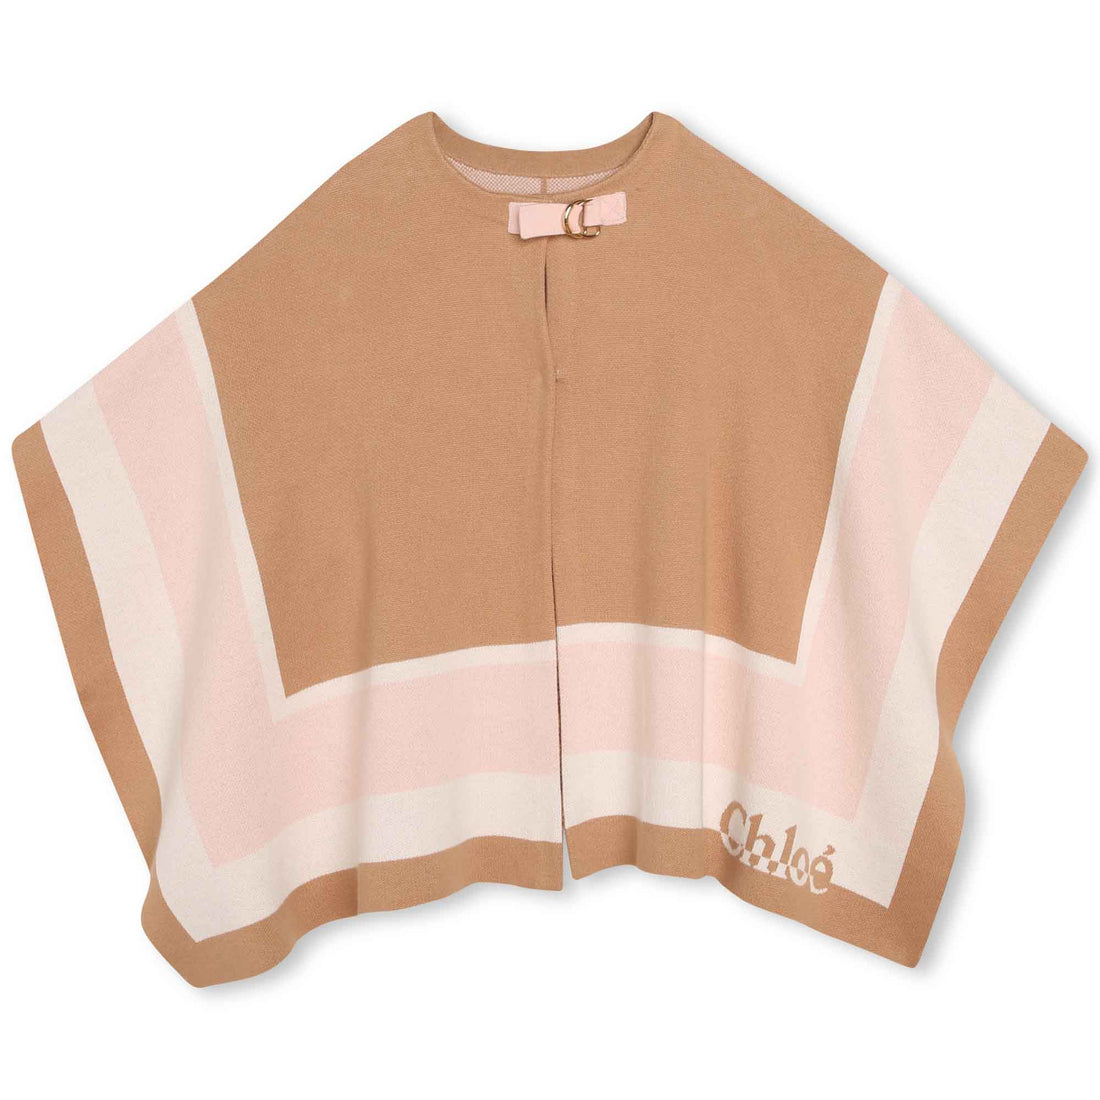 Chloe Knitted Jacket Style: C16443